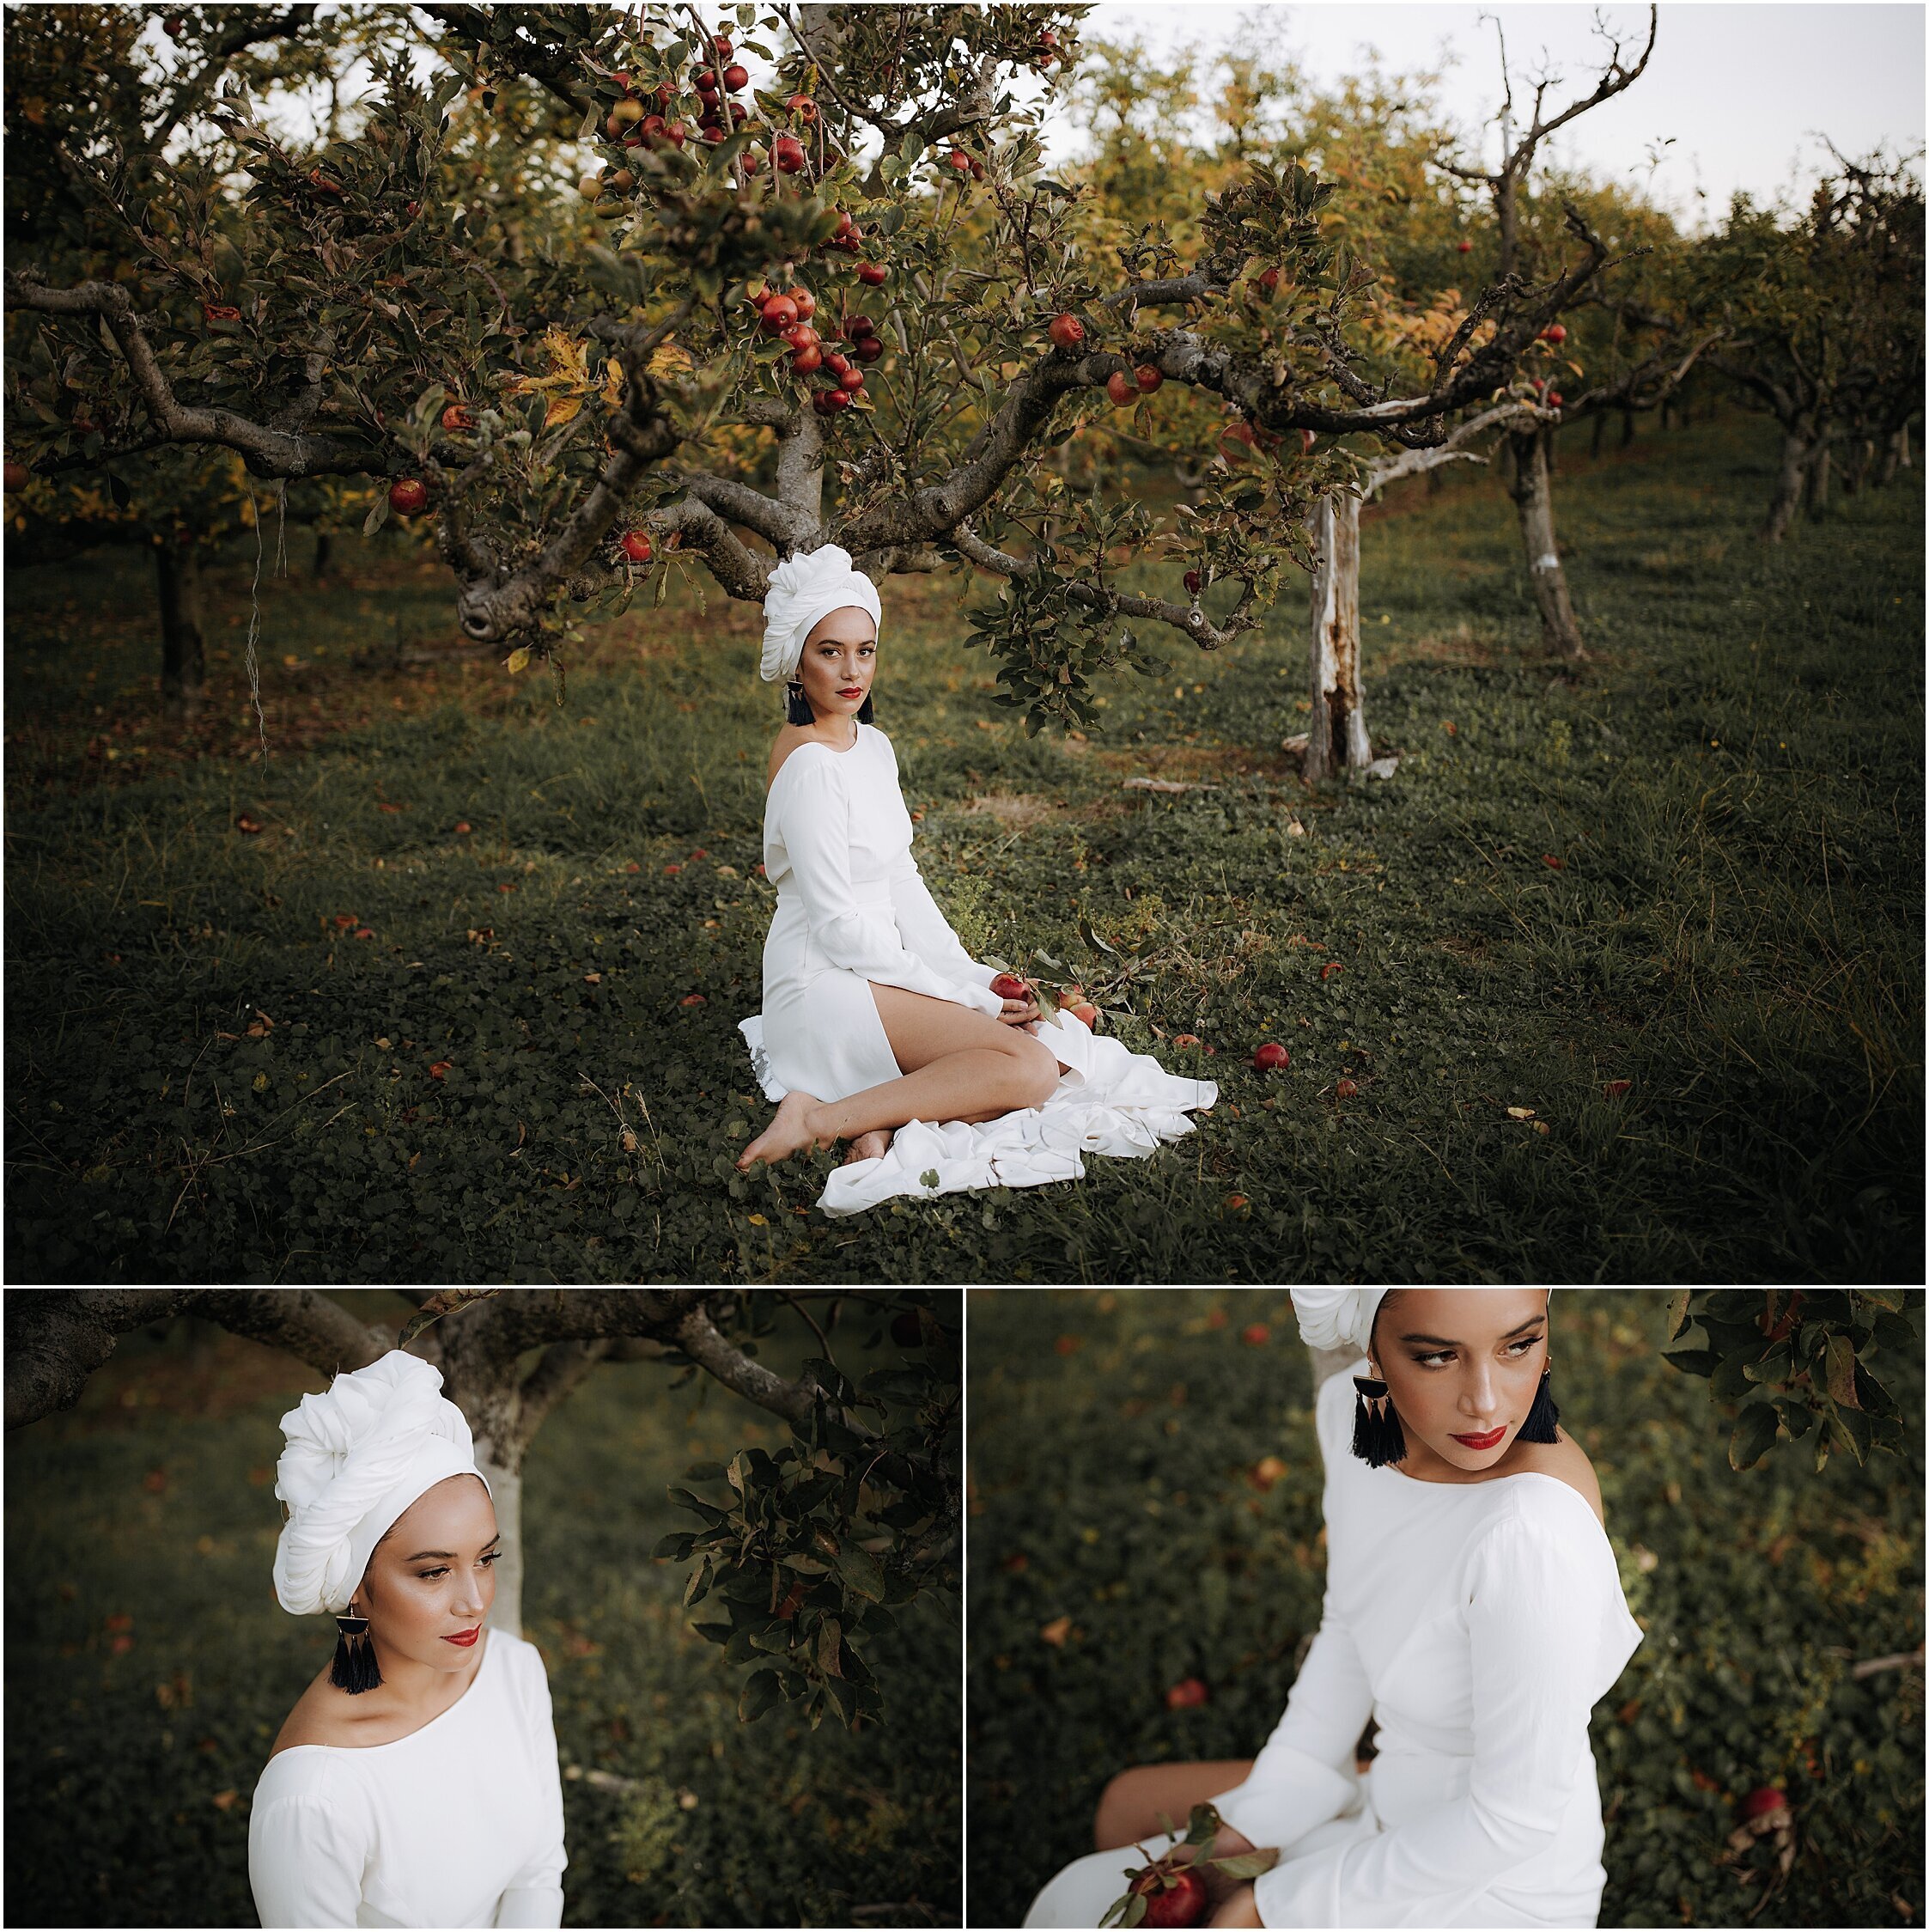 Zanda+Auckland+wedding+photographer+unique+portrait+photoshoot+ideas+autumn+winter+Windmill+apple+orchard+Coatesville+New+Zealand_28.jpeg